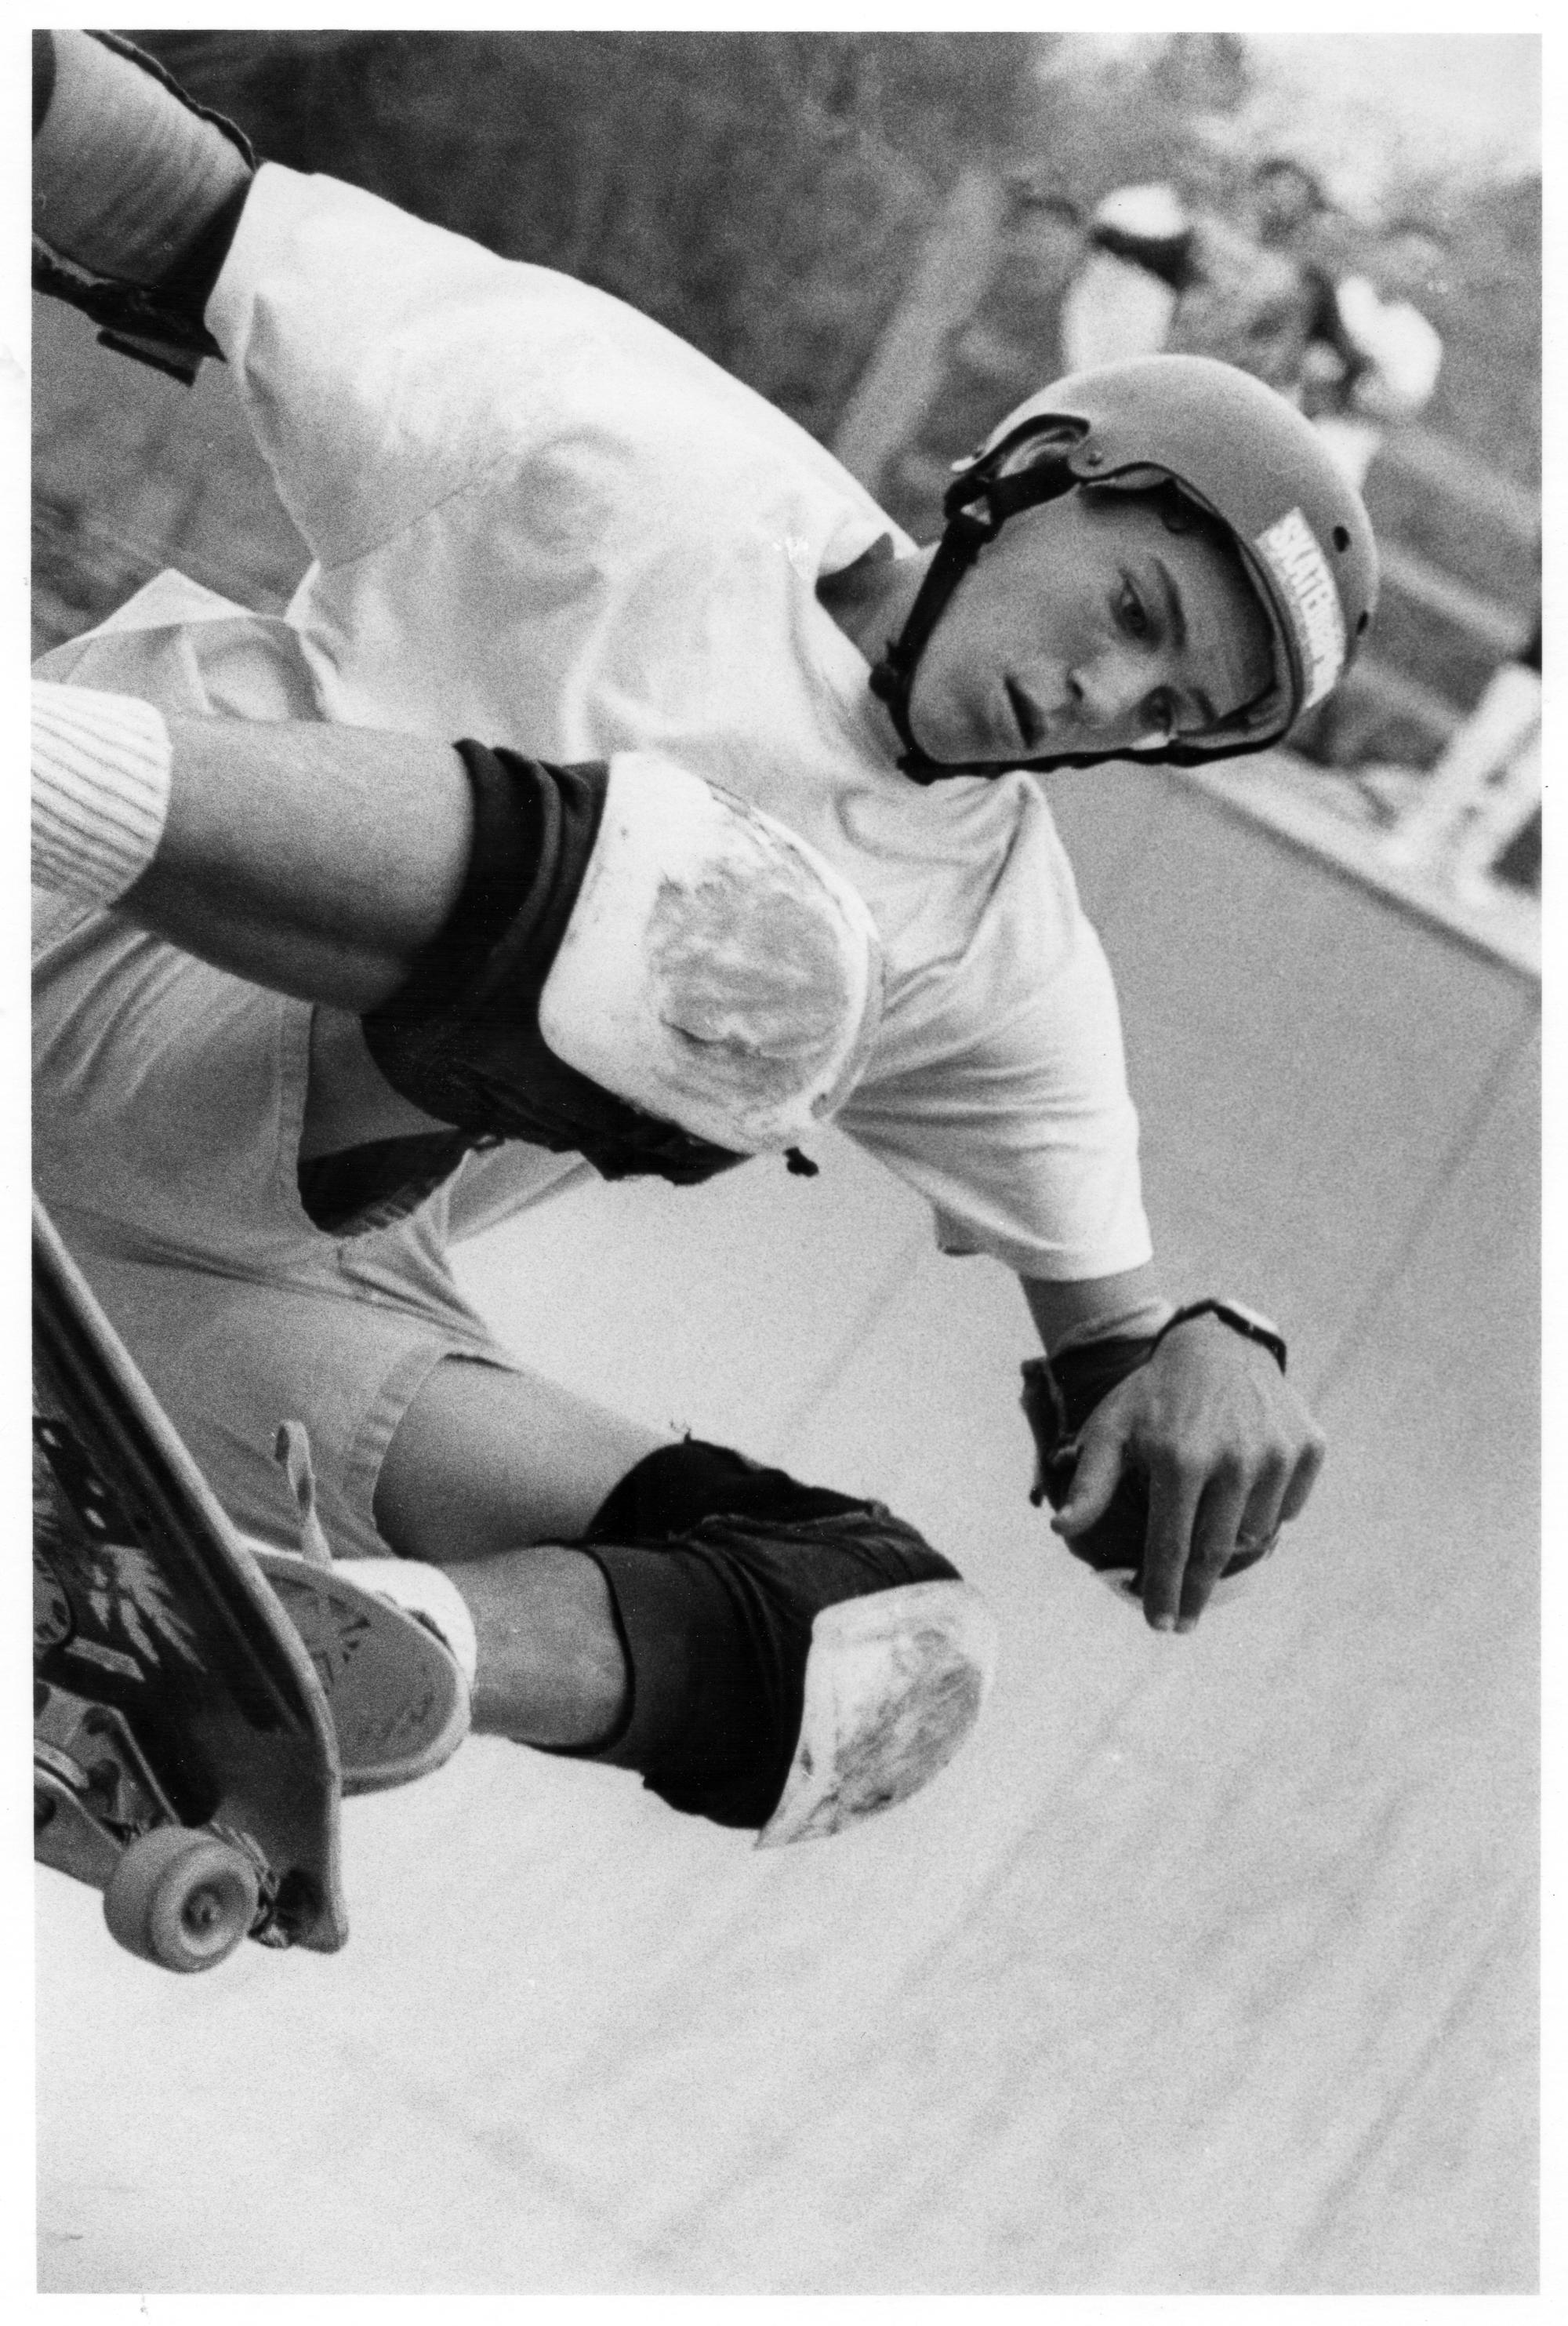 Skate Park (1989) - Skateboarding #05